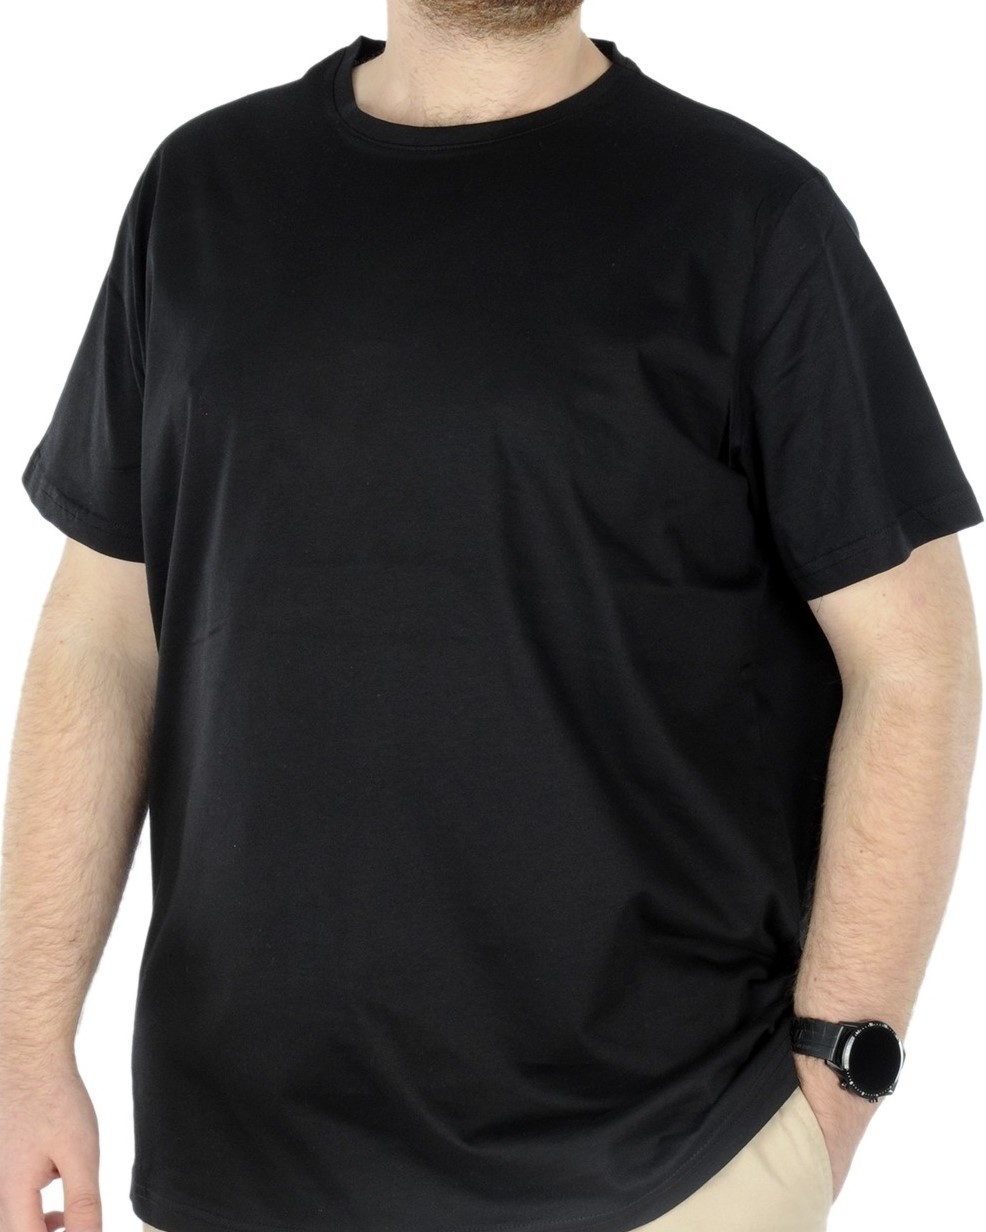 Büyük Beden Erkek T-shirt Basic 20031 Siyah